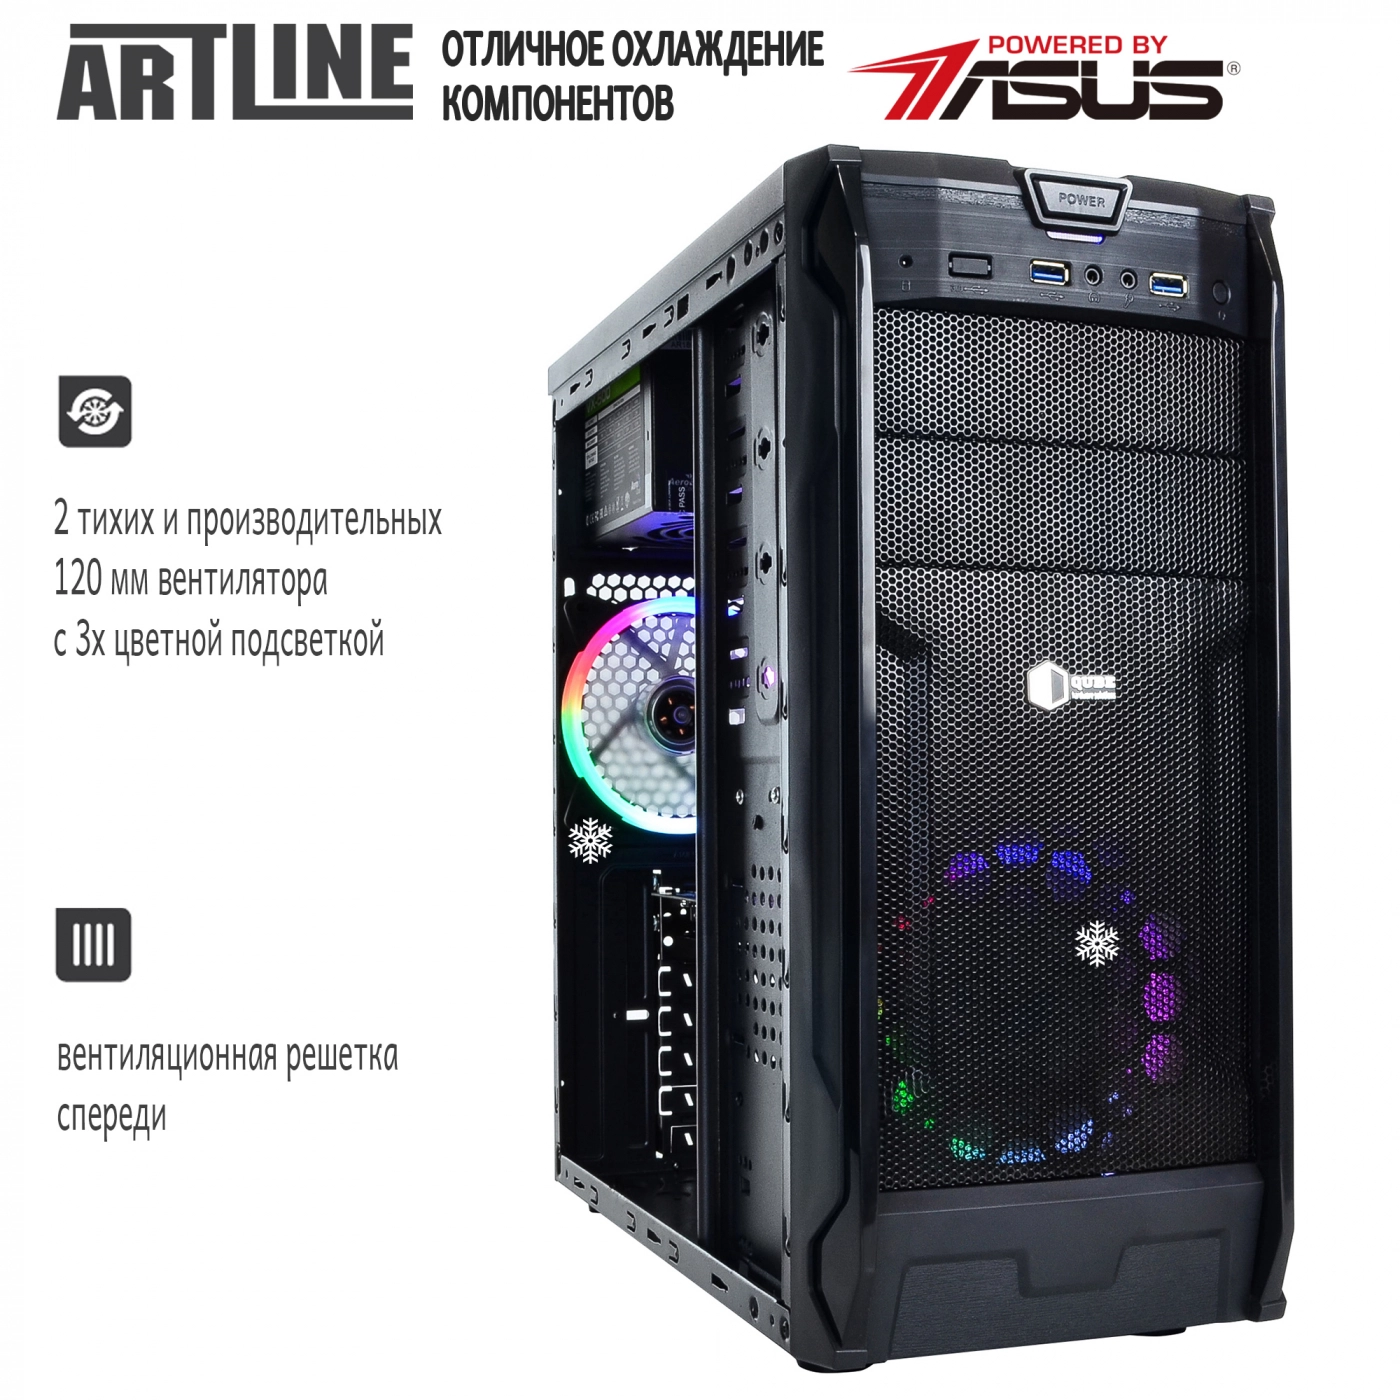 Купить Компьютер ARTLINE Gaming X31v12 - фото 3